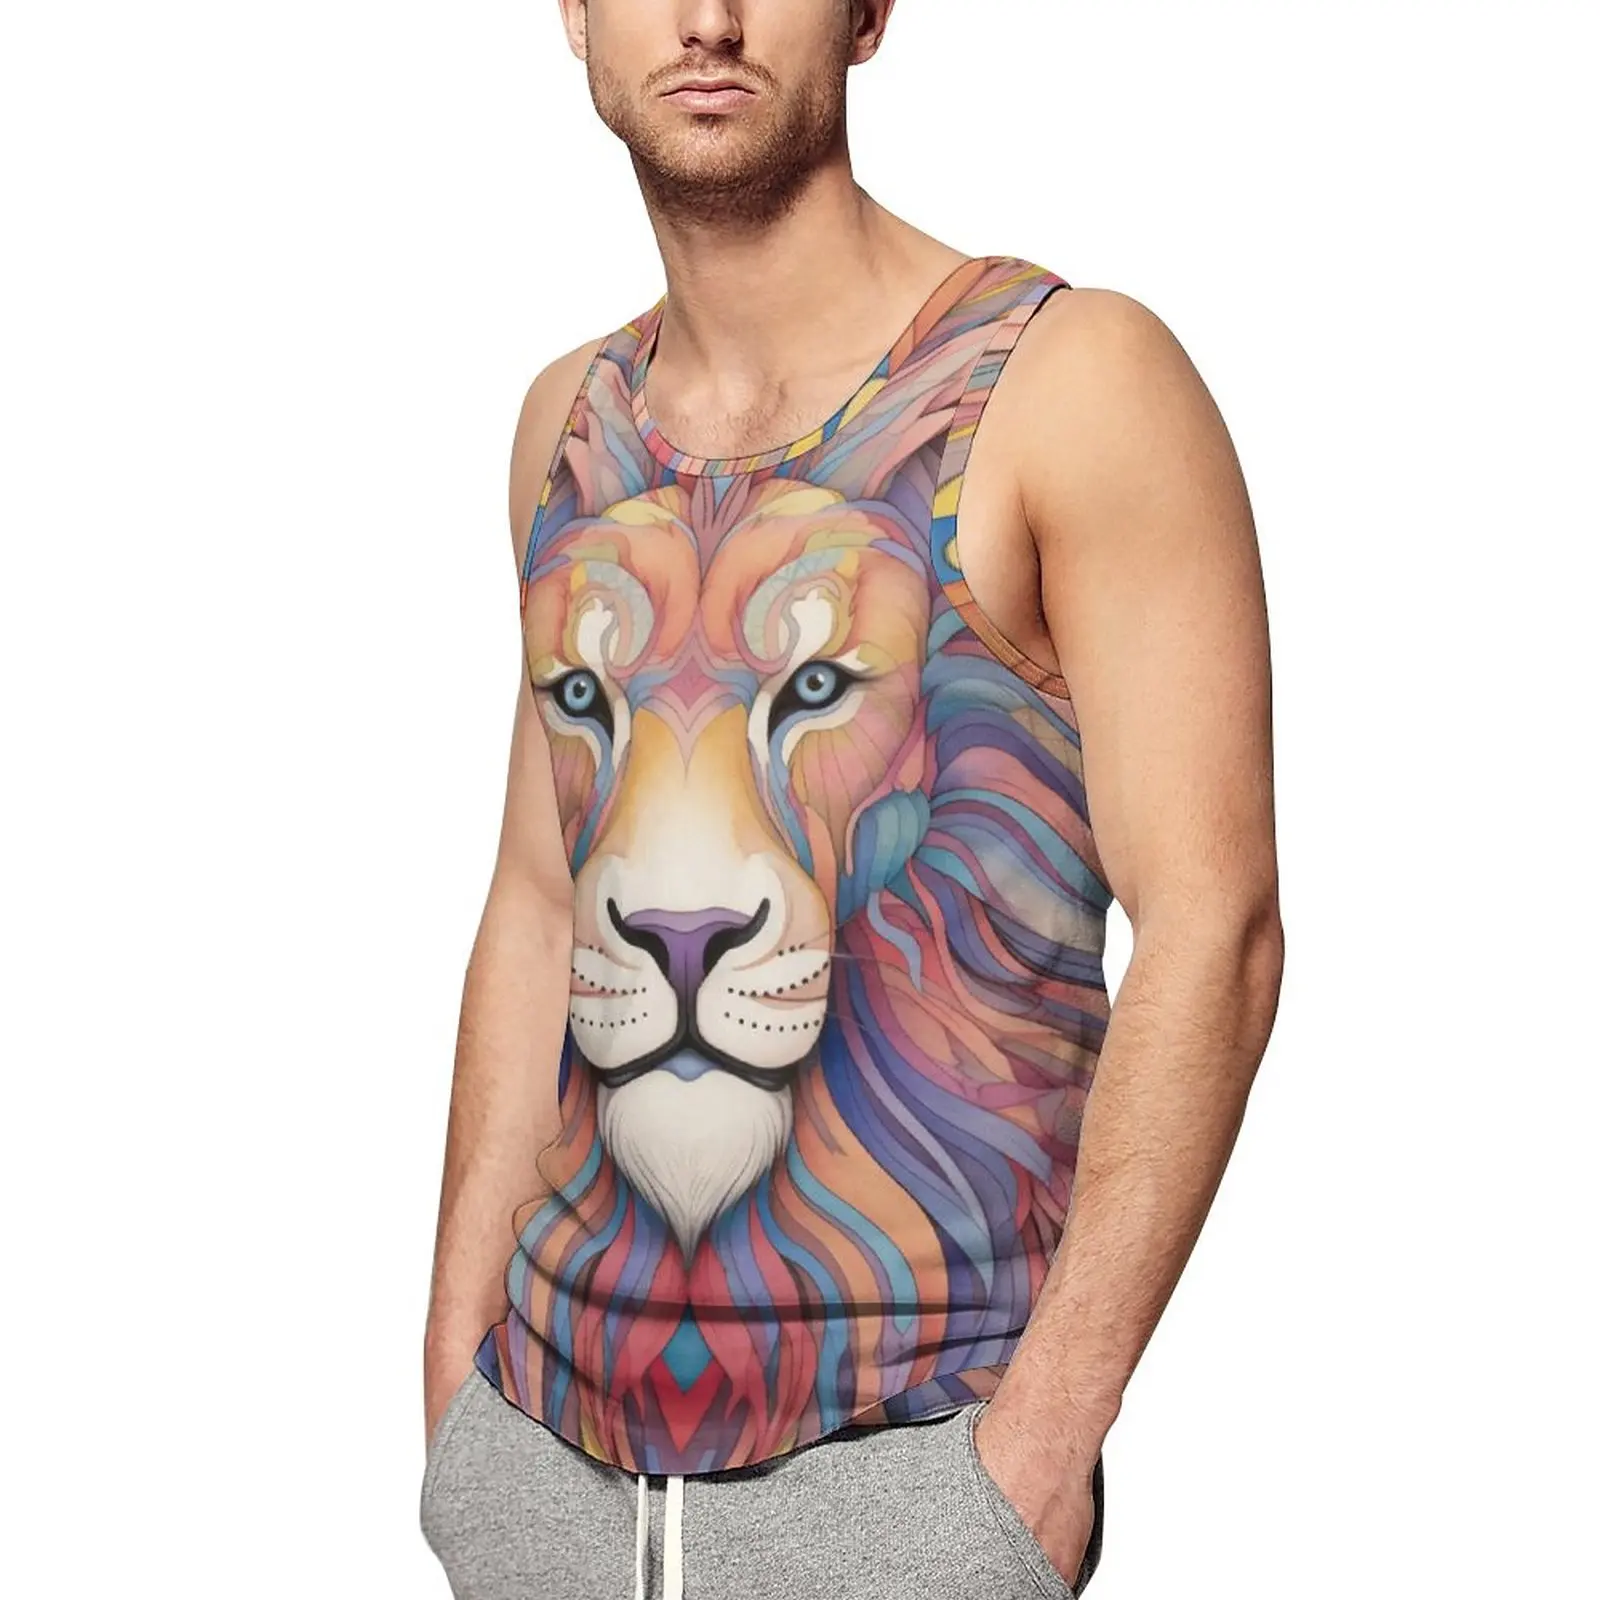 

Майка-карандаш мужская с рисунком льва, крутая пляжная рубашка без рукавов с графическим принтом для бодибилдинга, цветной мультяшный рисунок, 3XL, 4XL, 5XL